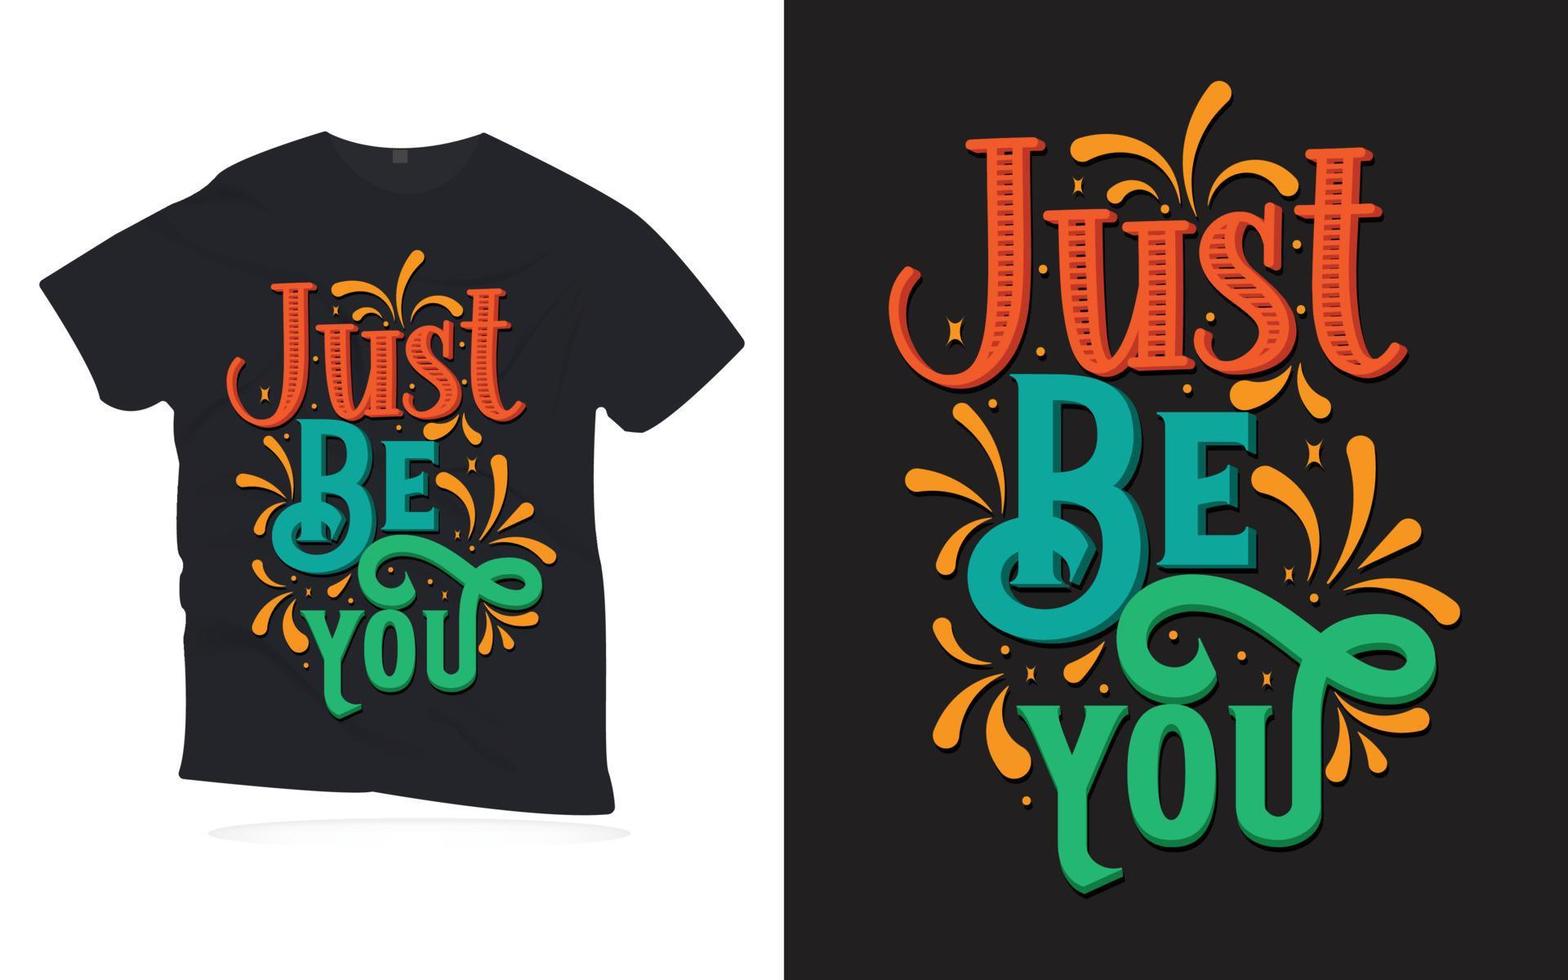 bara vara dig. motiverande citat bokstäver t-shirt design. vektor